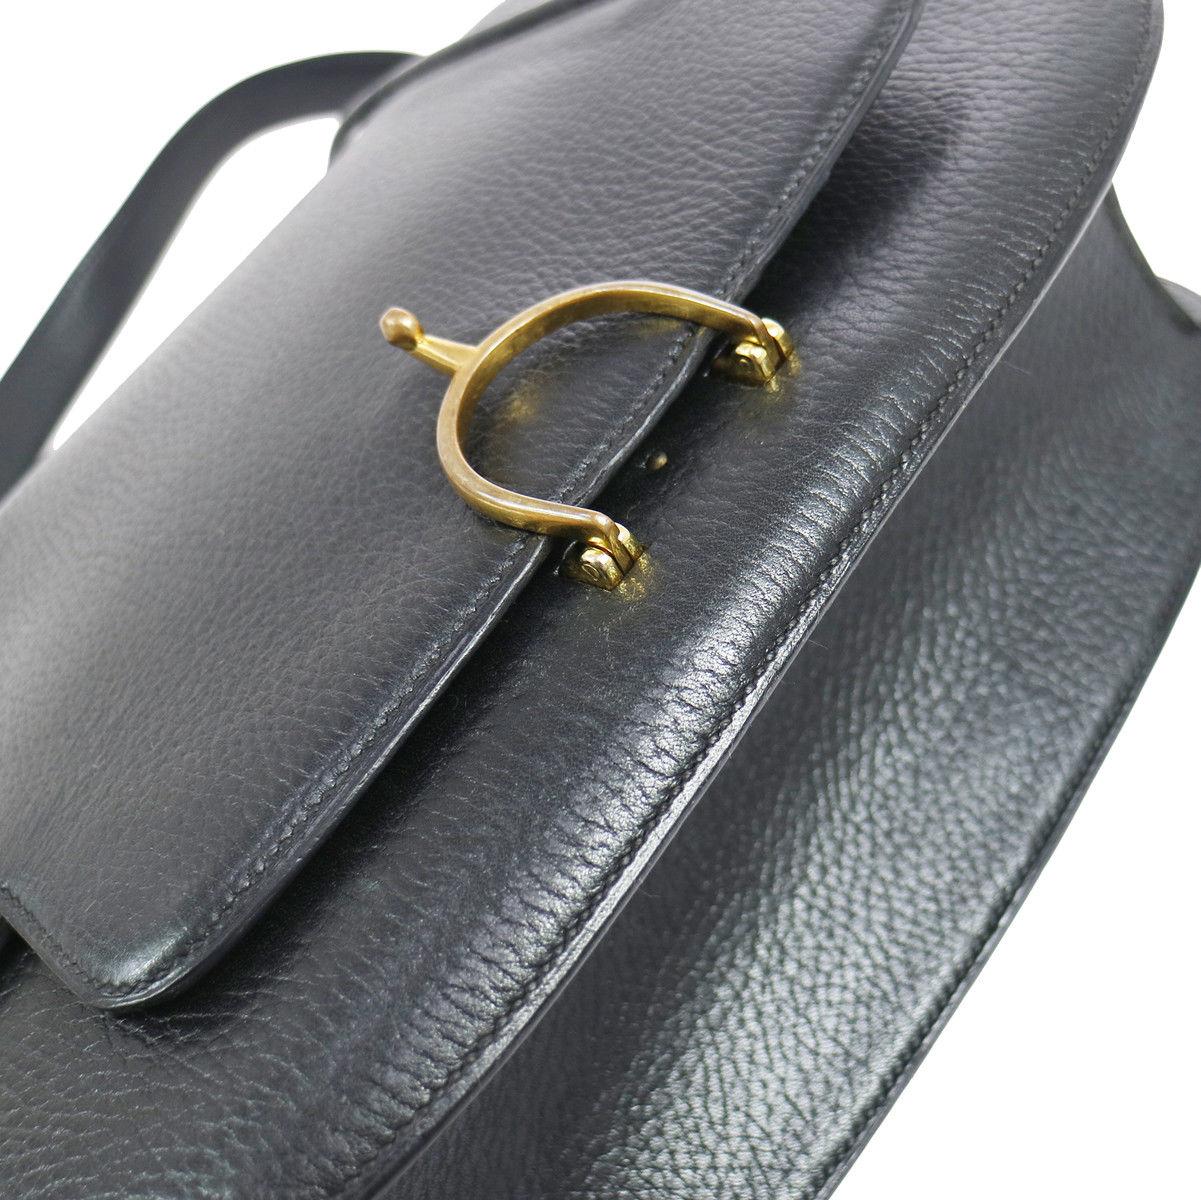 Hermes Black Leather Gold Horsebit Top Handle Satchel Saddle Shoulder Flap Bag

Leather
Gold tone hardware
Leather lining
Date code present
Made in France
Adjustable shoulder strap 8.5-15.5